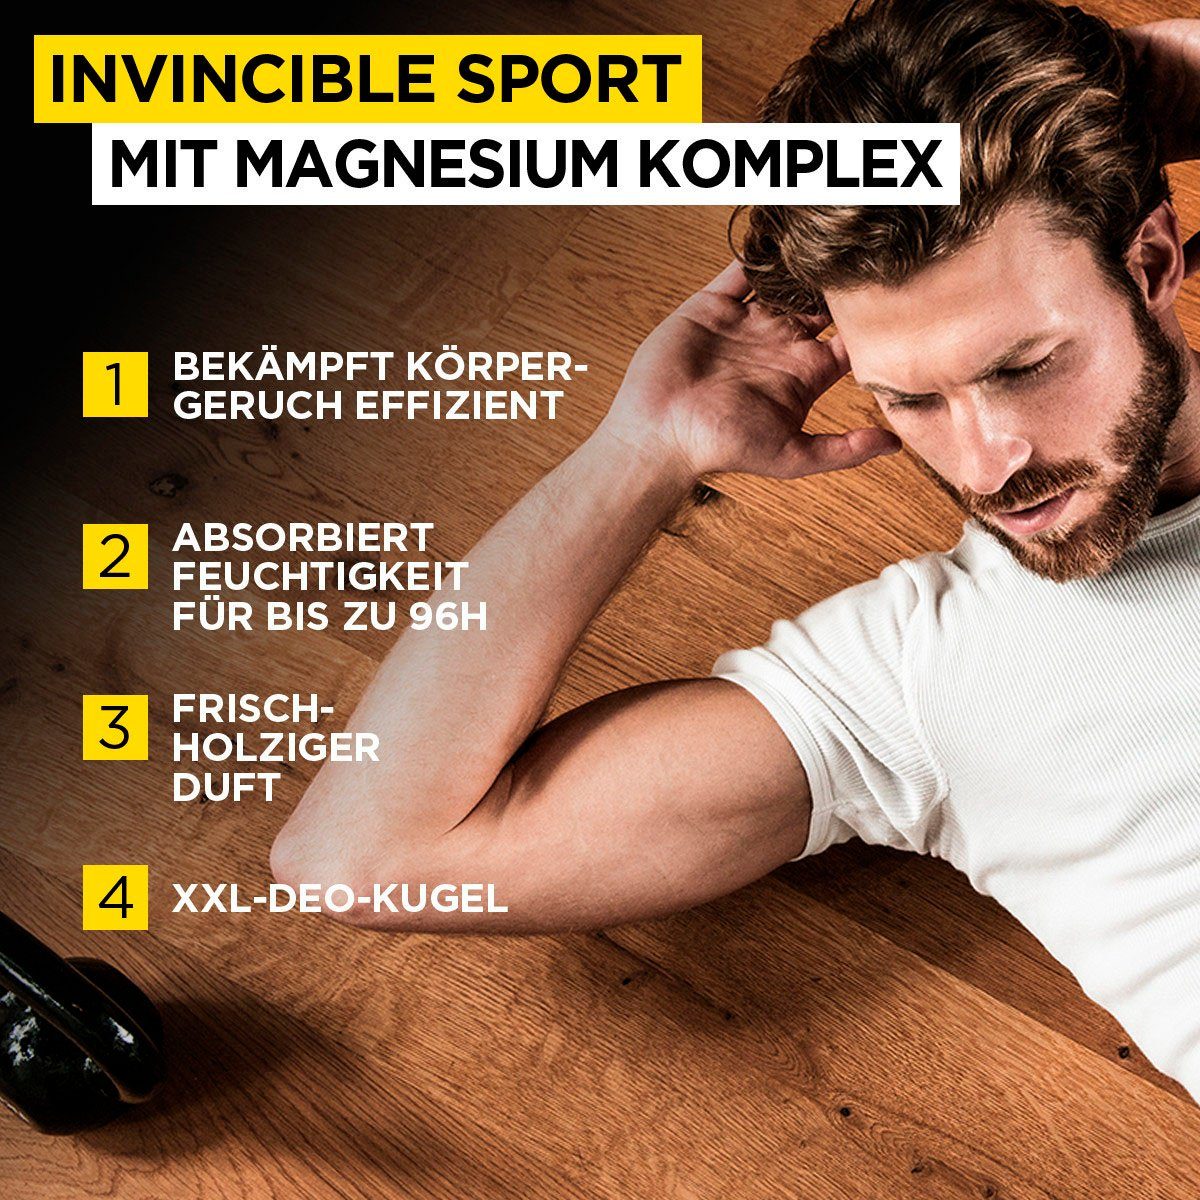 L'ORÉAL PARIS MEN EXPERT beim Invincible Deo Anti-Transpirant, Zuverlässiger Deo-Roller Schutz Sport Sport